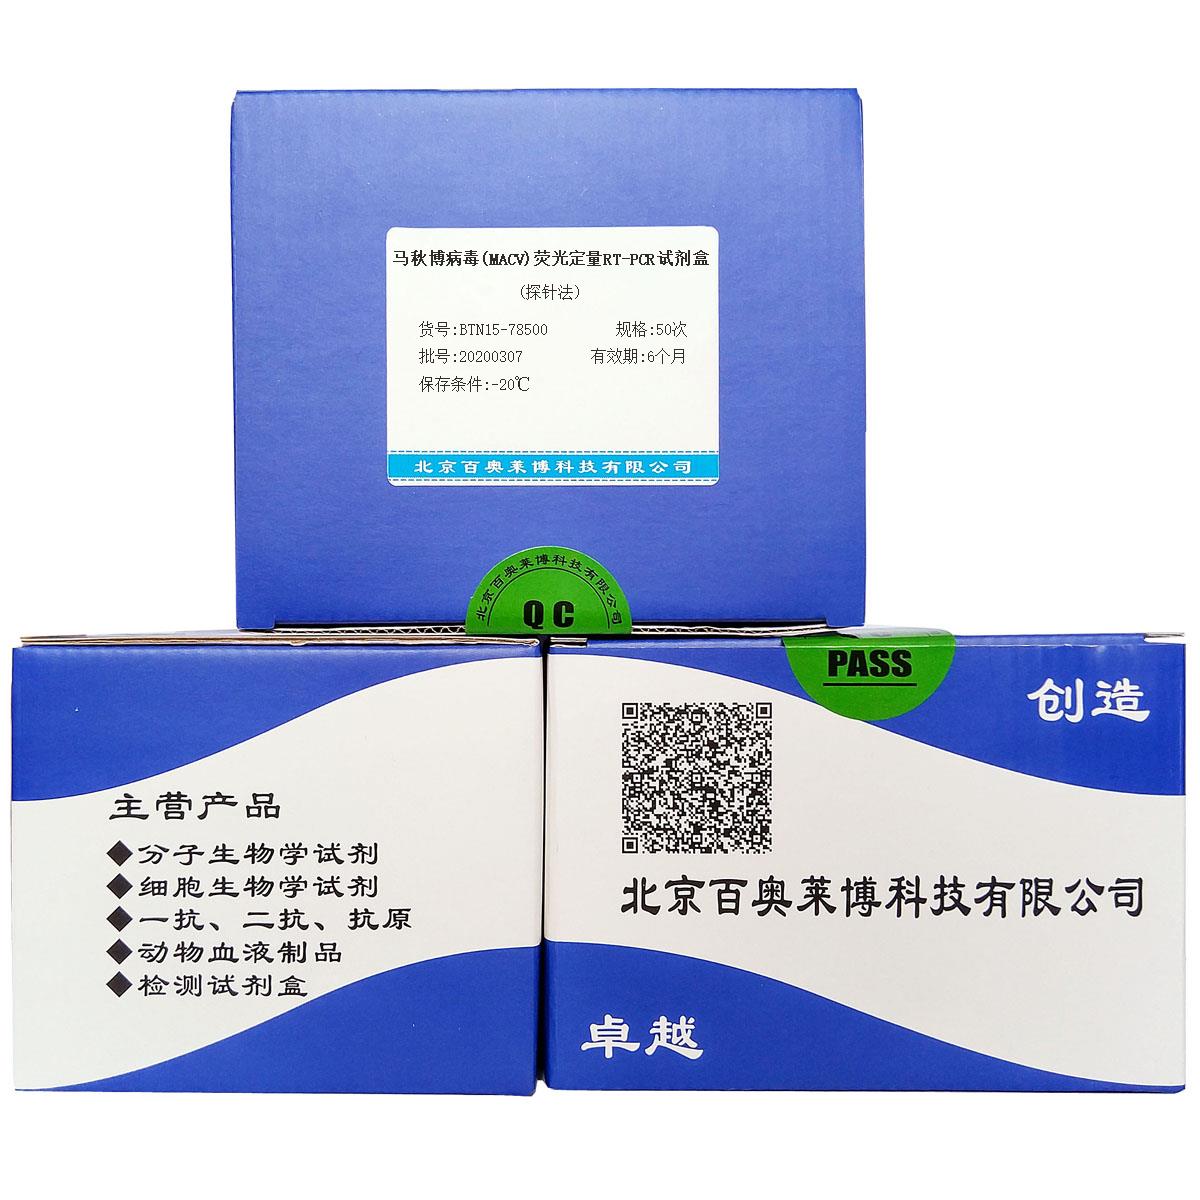 马秋博病毒(MACV)荧光定量RT-PCR试剂盒(探针法)